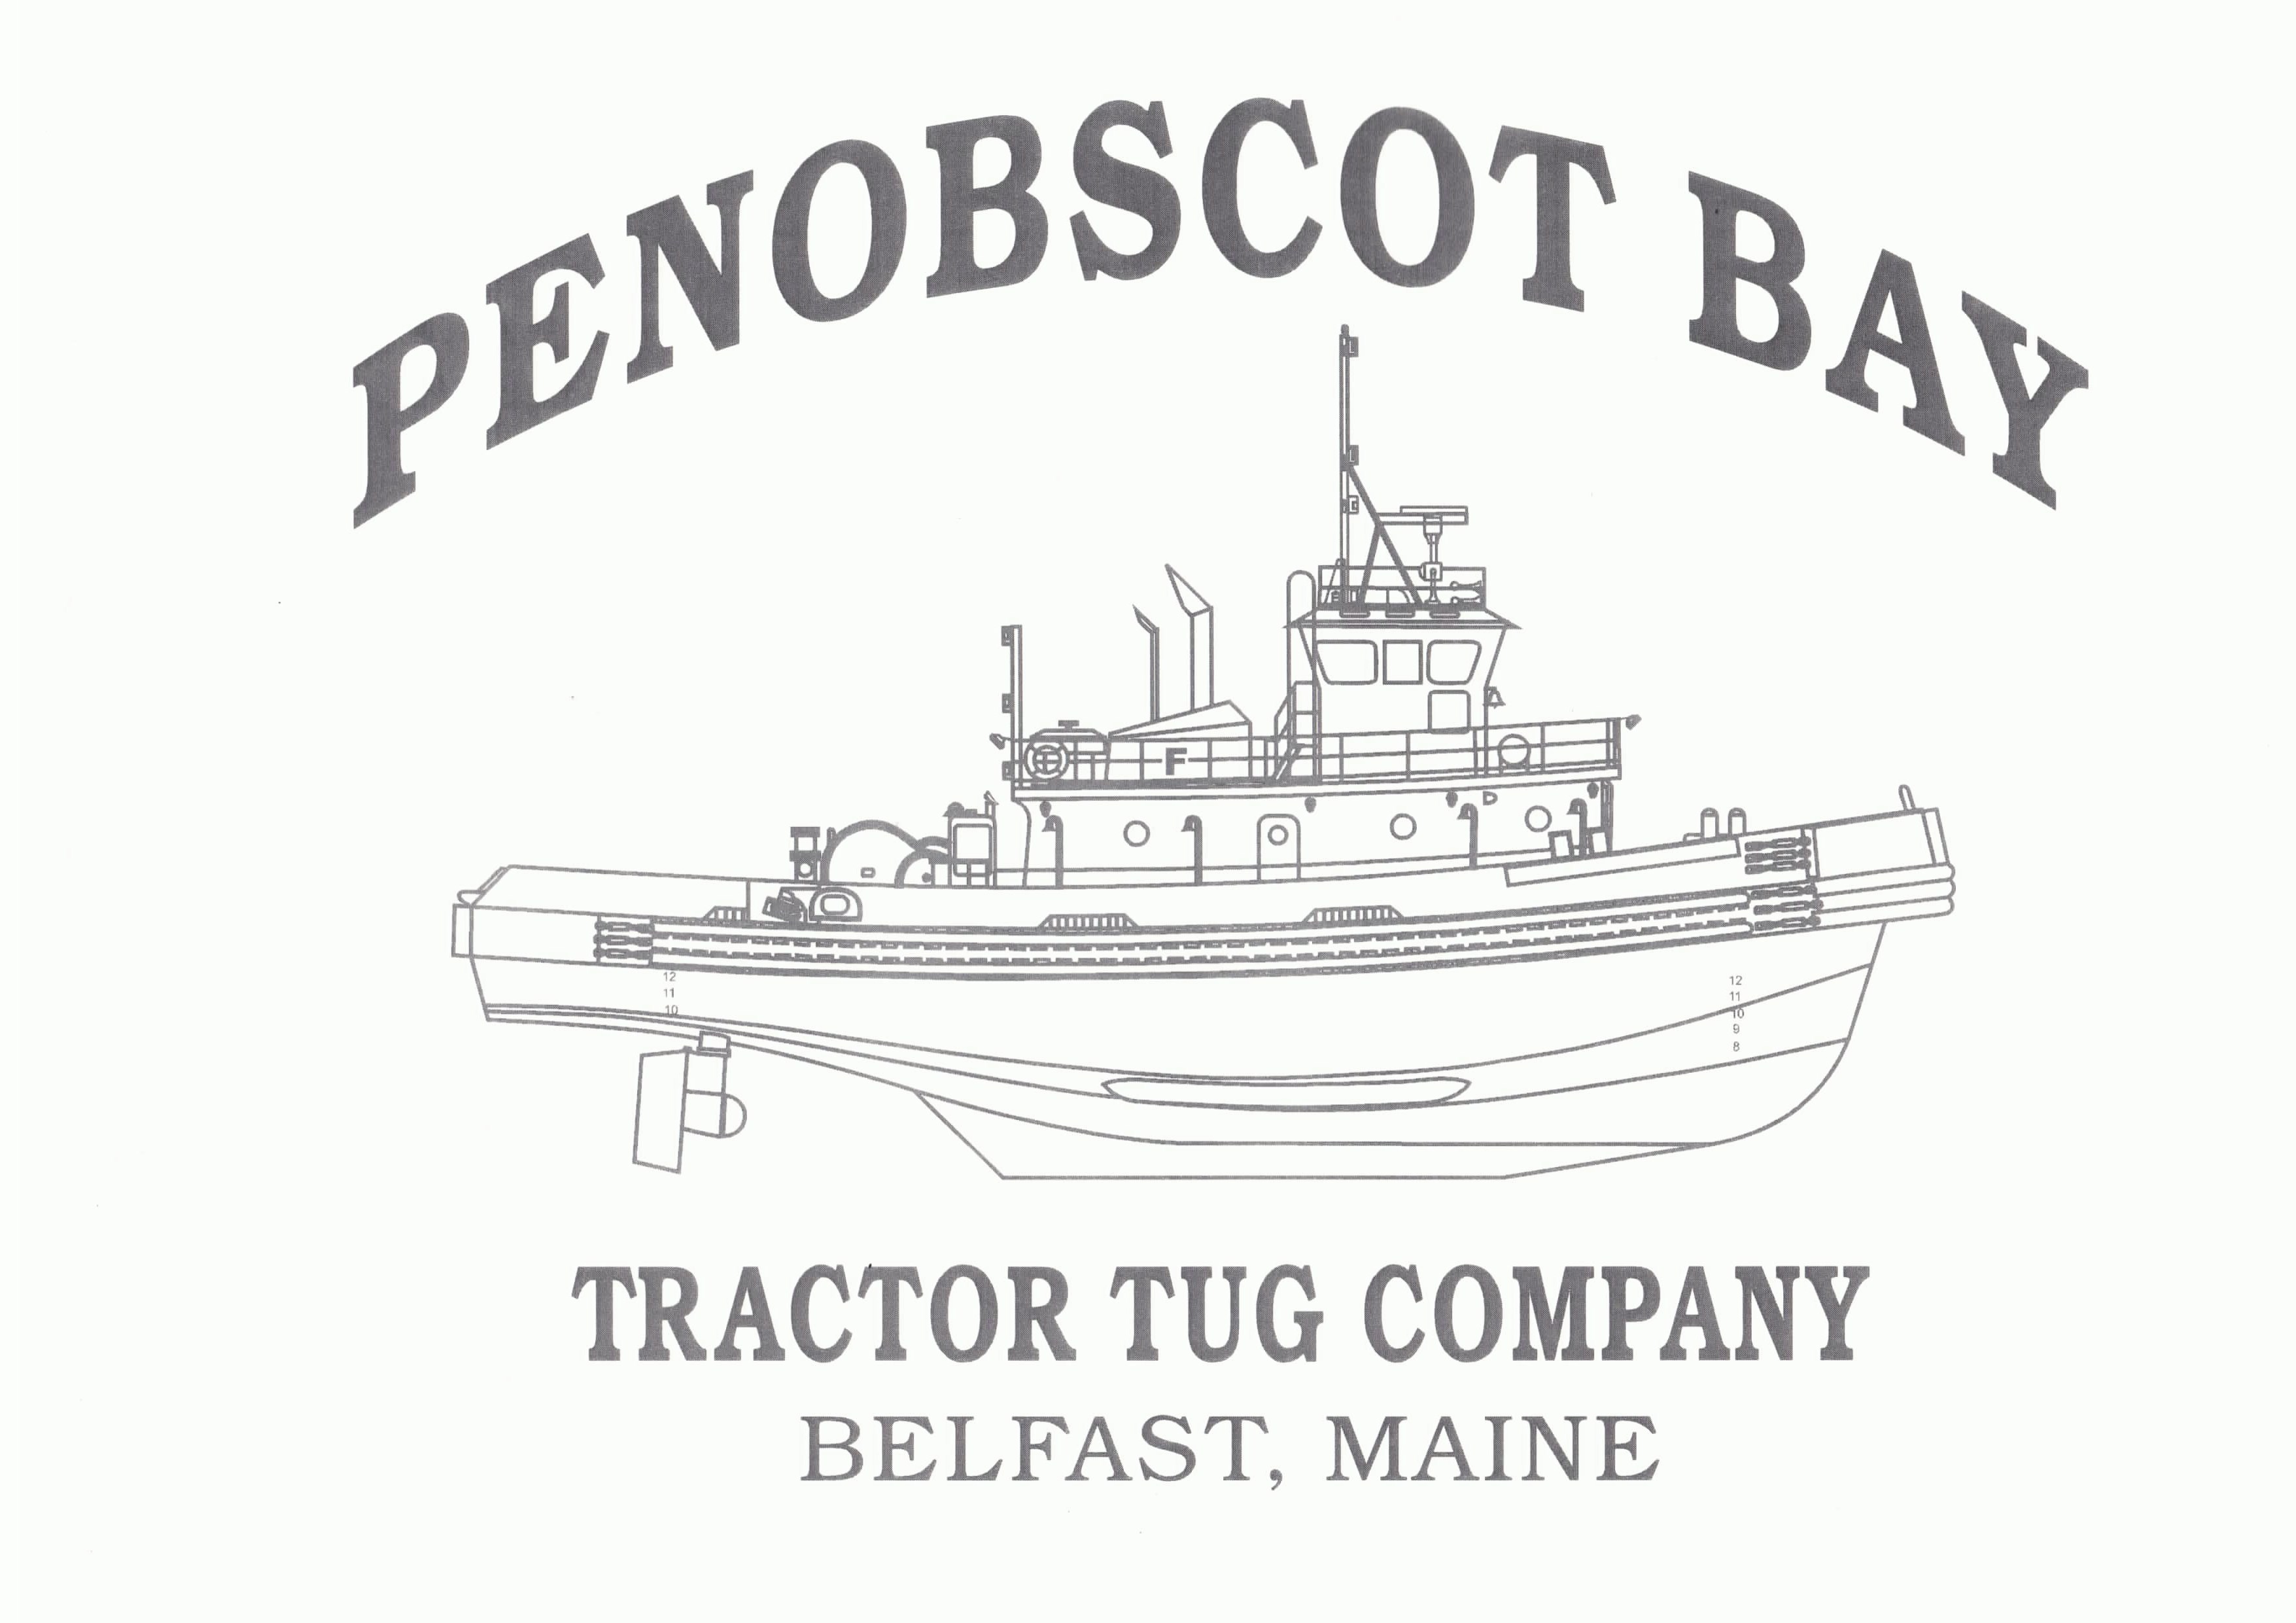 Penobscot Bay Tractor Tug Company